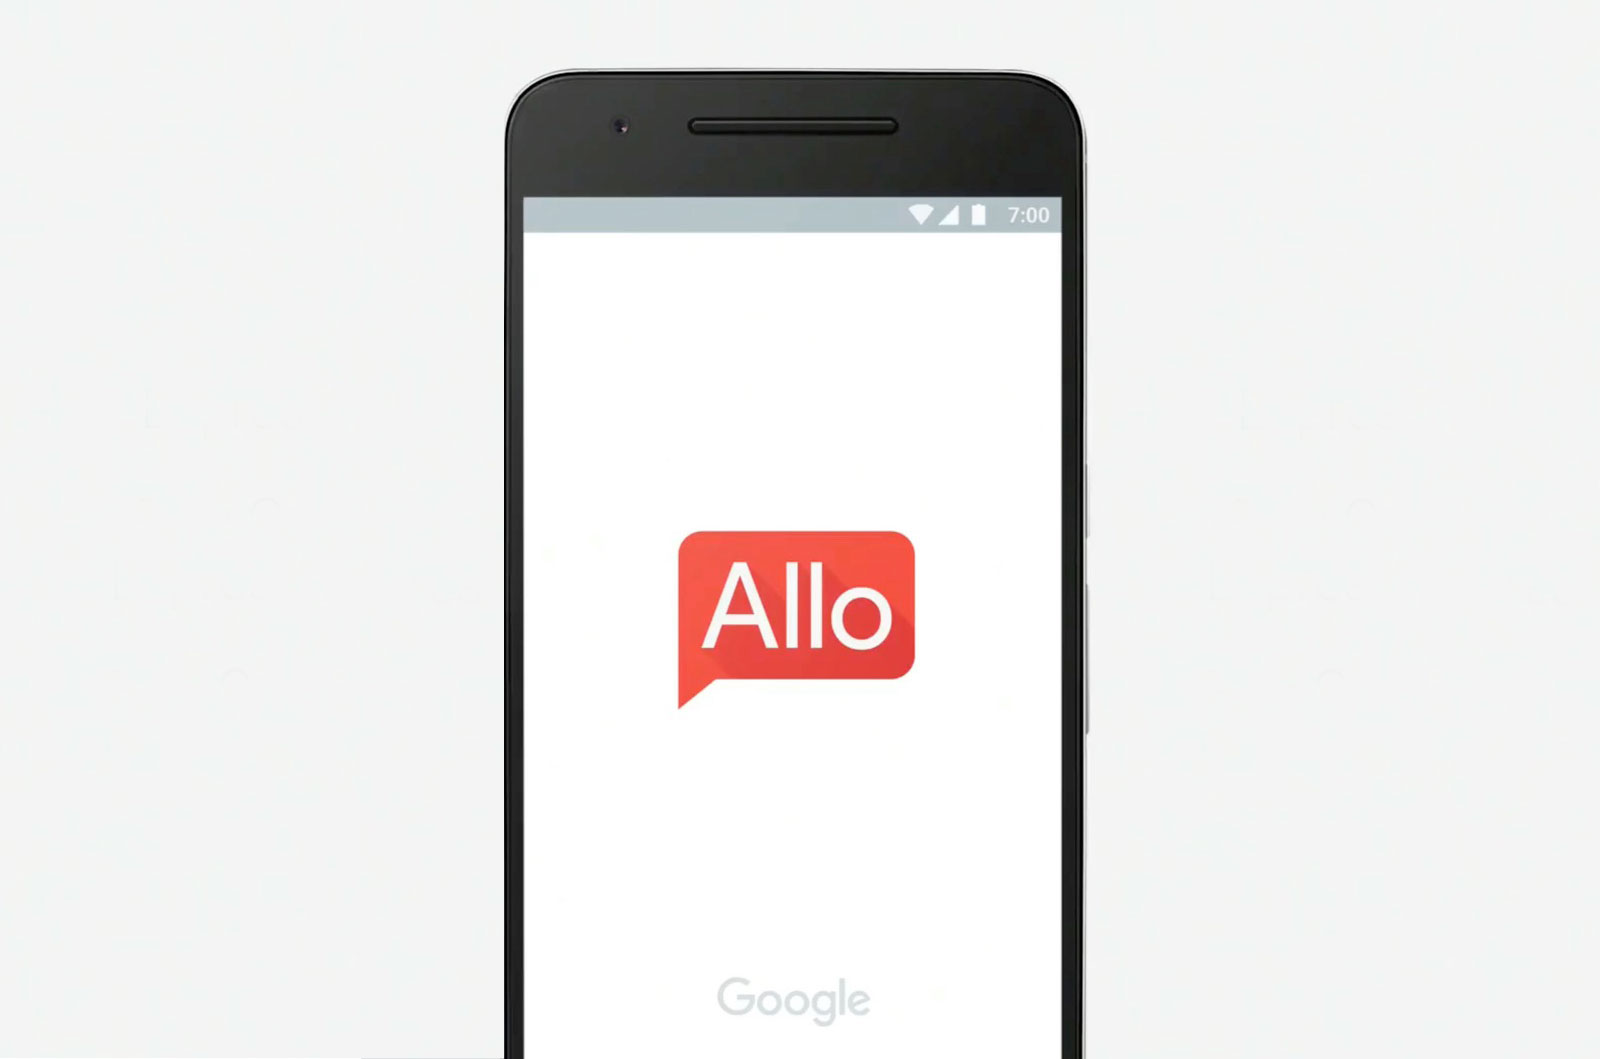 Google Allo launch